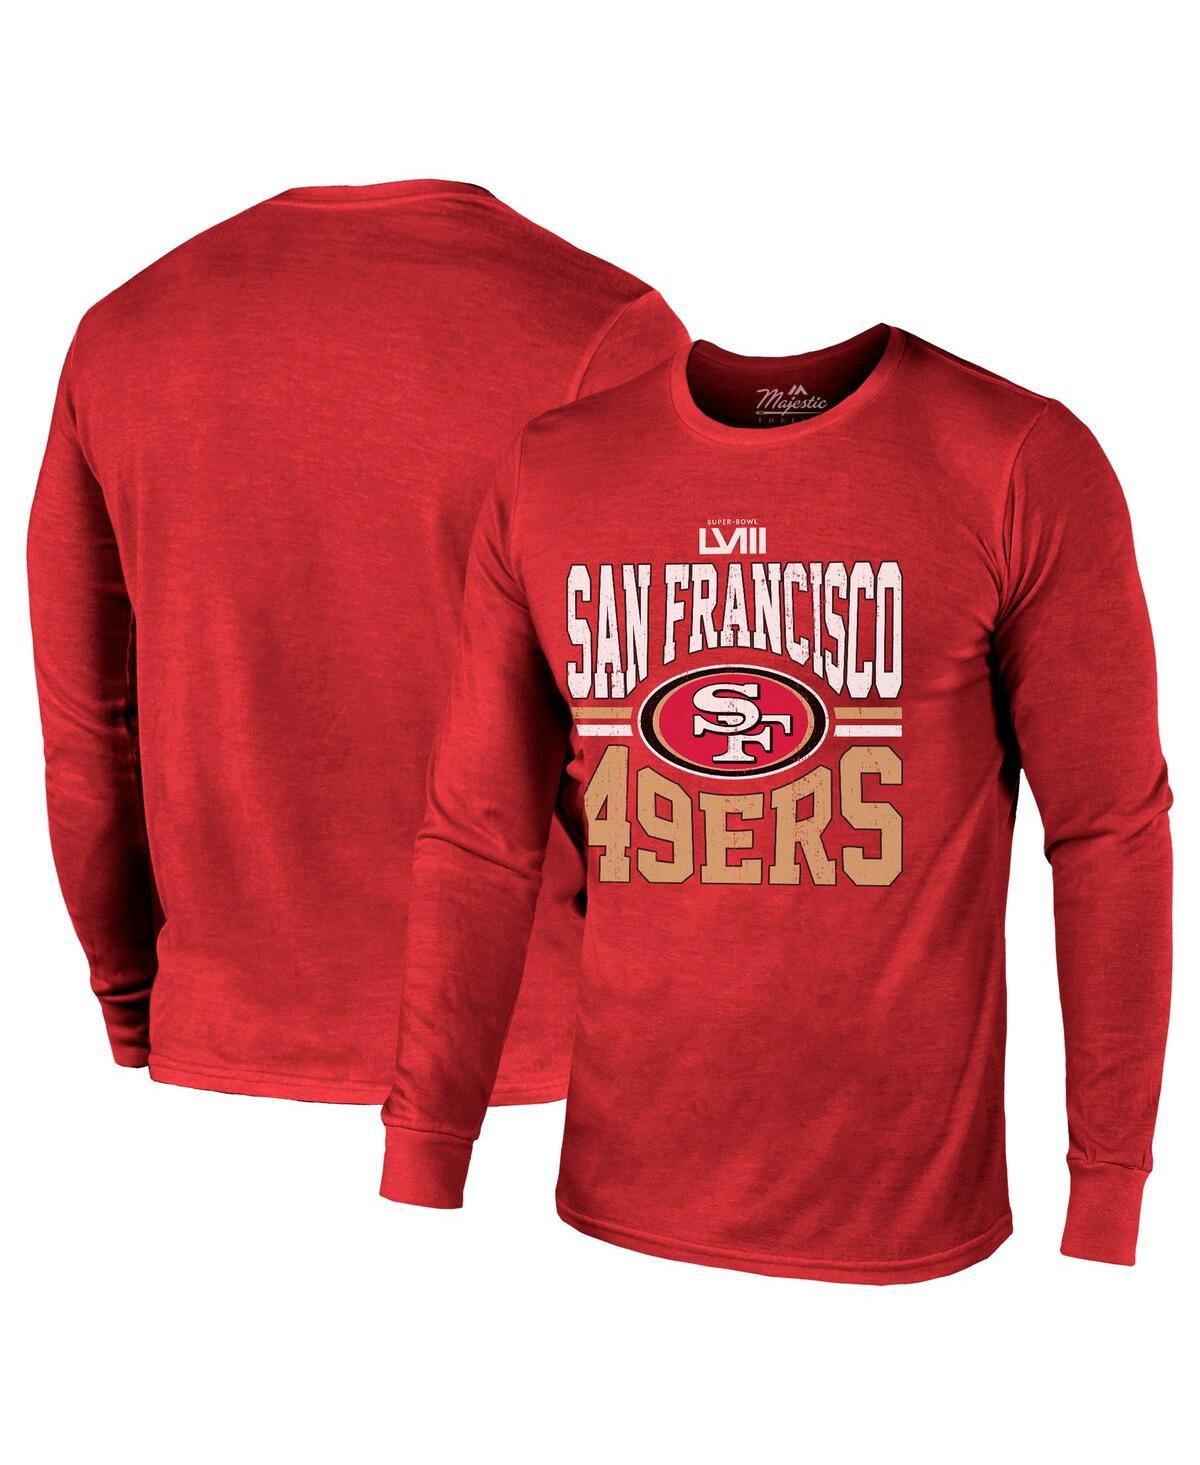 Men's Majestic Threads Scarlet San Francisco 49ers Super Bowl Lviii Tri-Blend Long Sleeve T-shirt - Scarlet